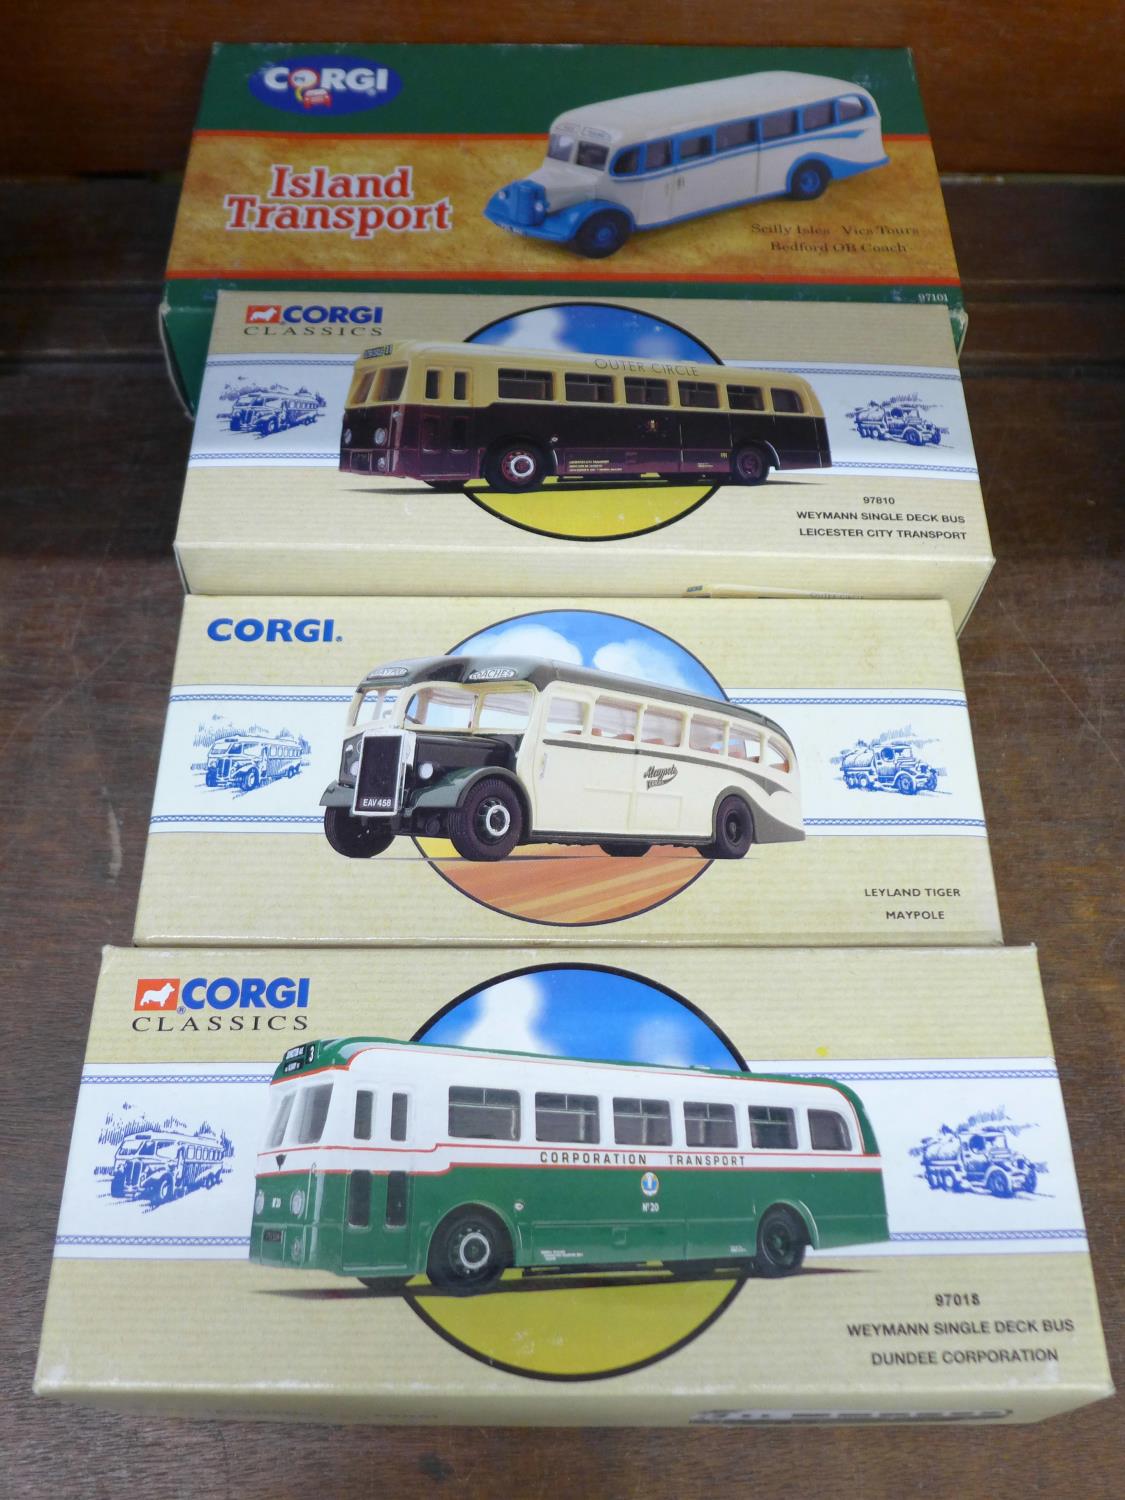 Four Corgi model buses including Island transport